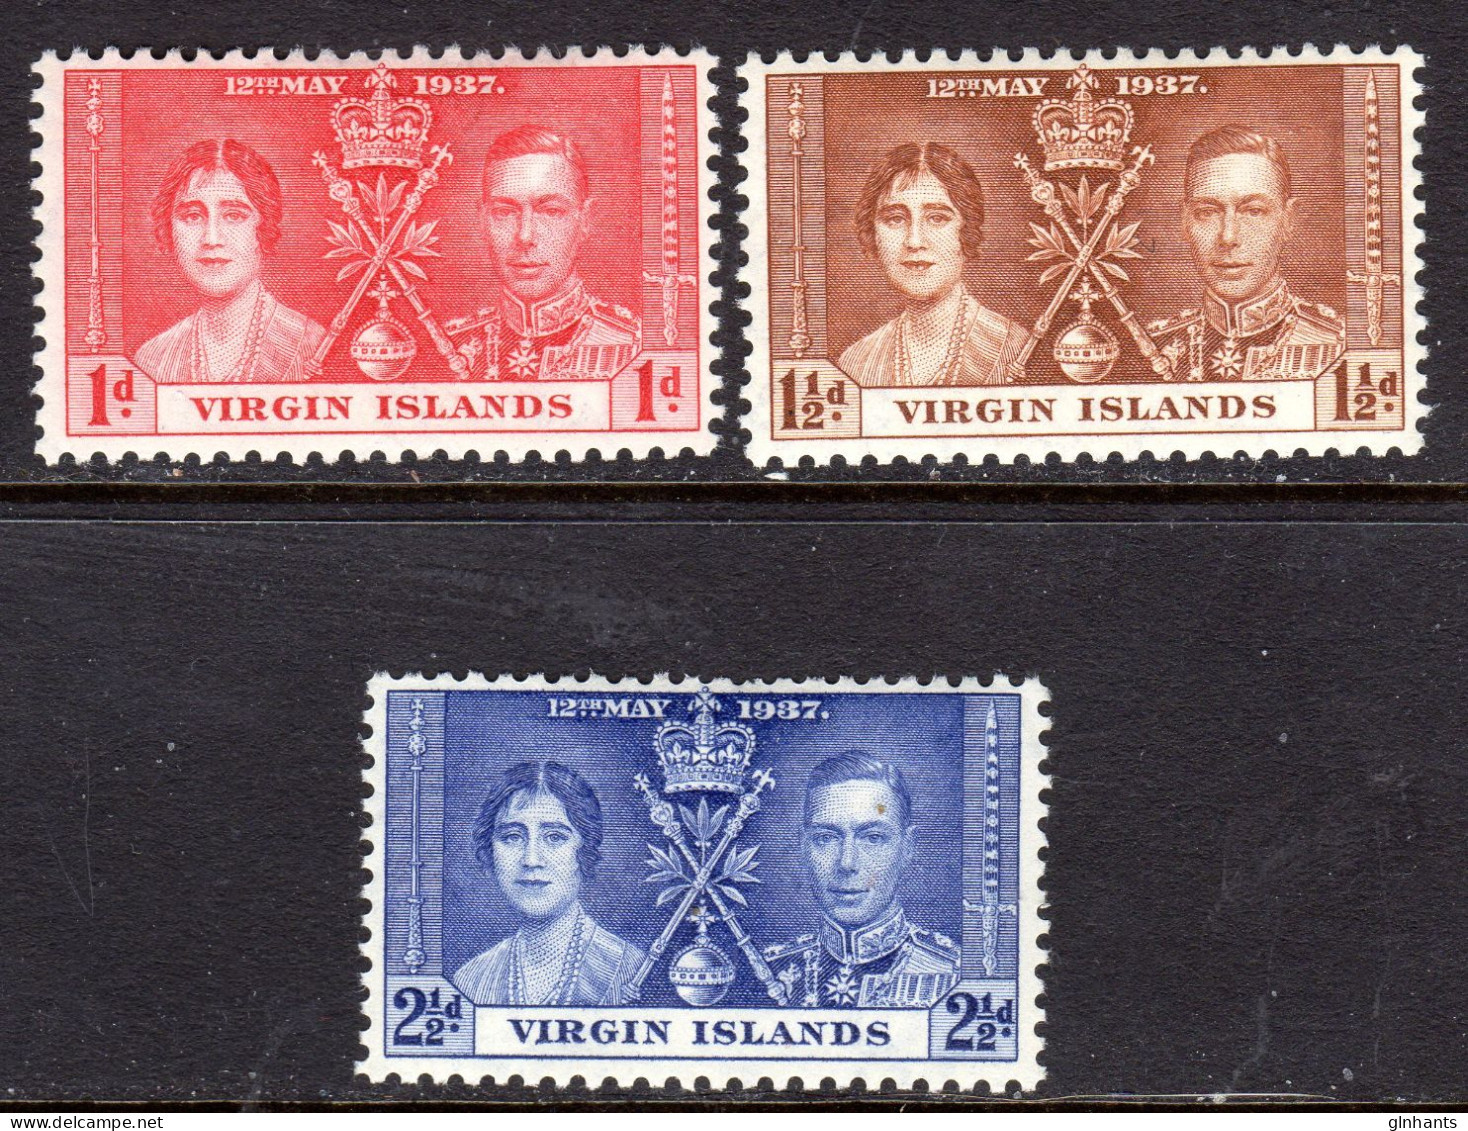 VIRGIN ISLANDS - 1937 CORONATION SET (3V) FINE MOUNTED MINT MM * SG 107-109 - Iles Vièrges Britanniques